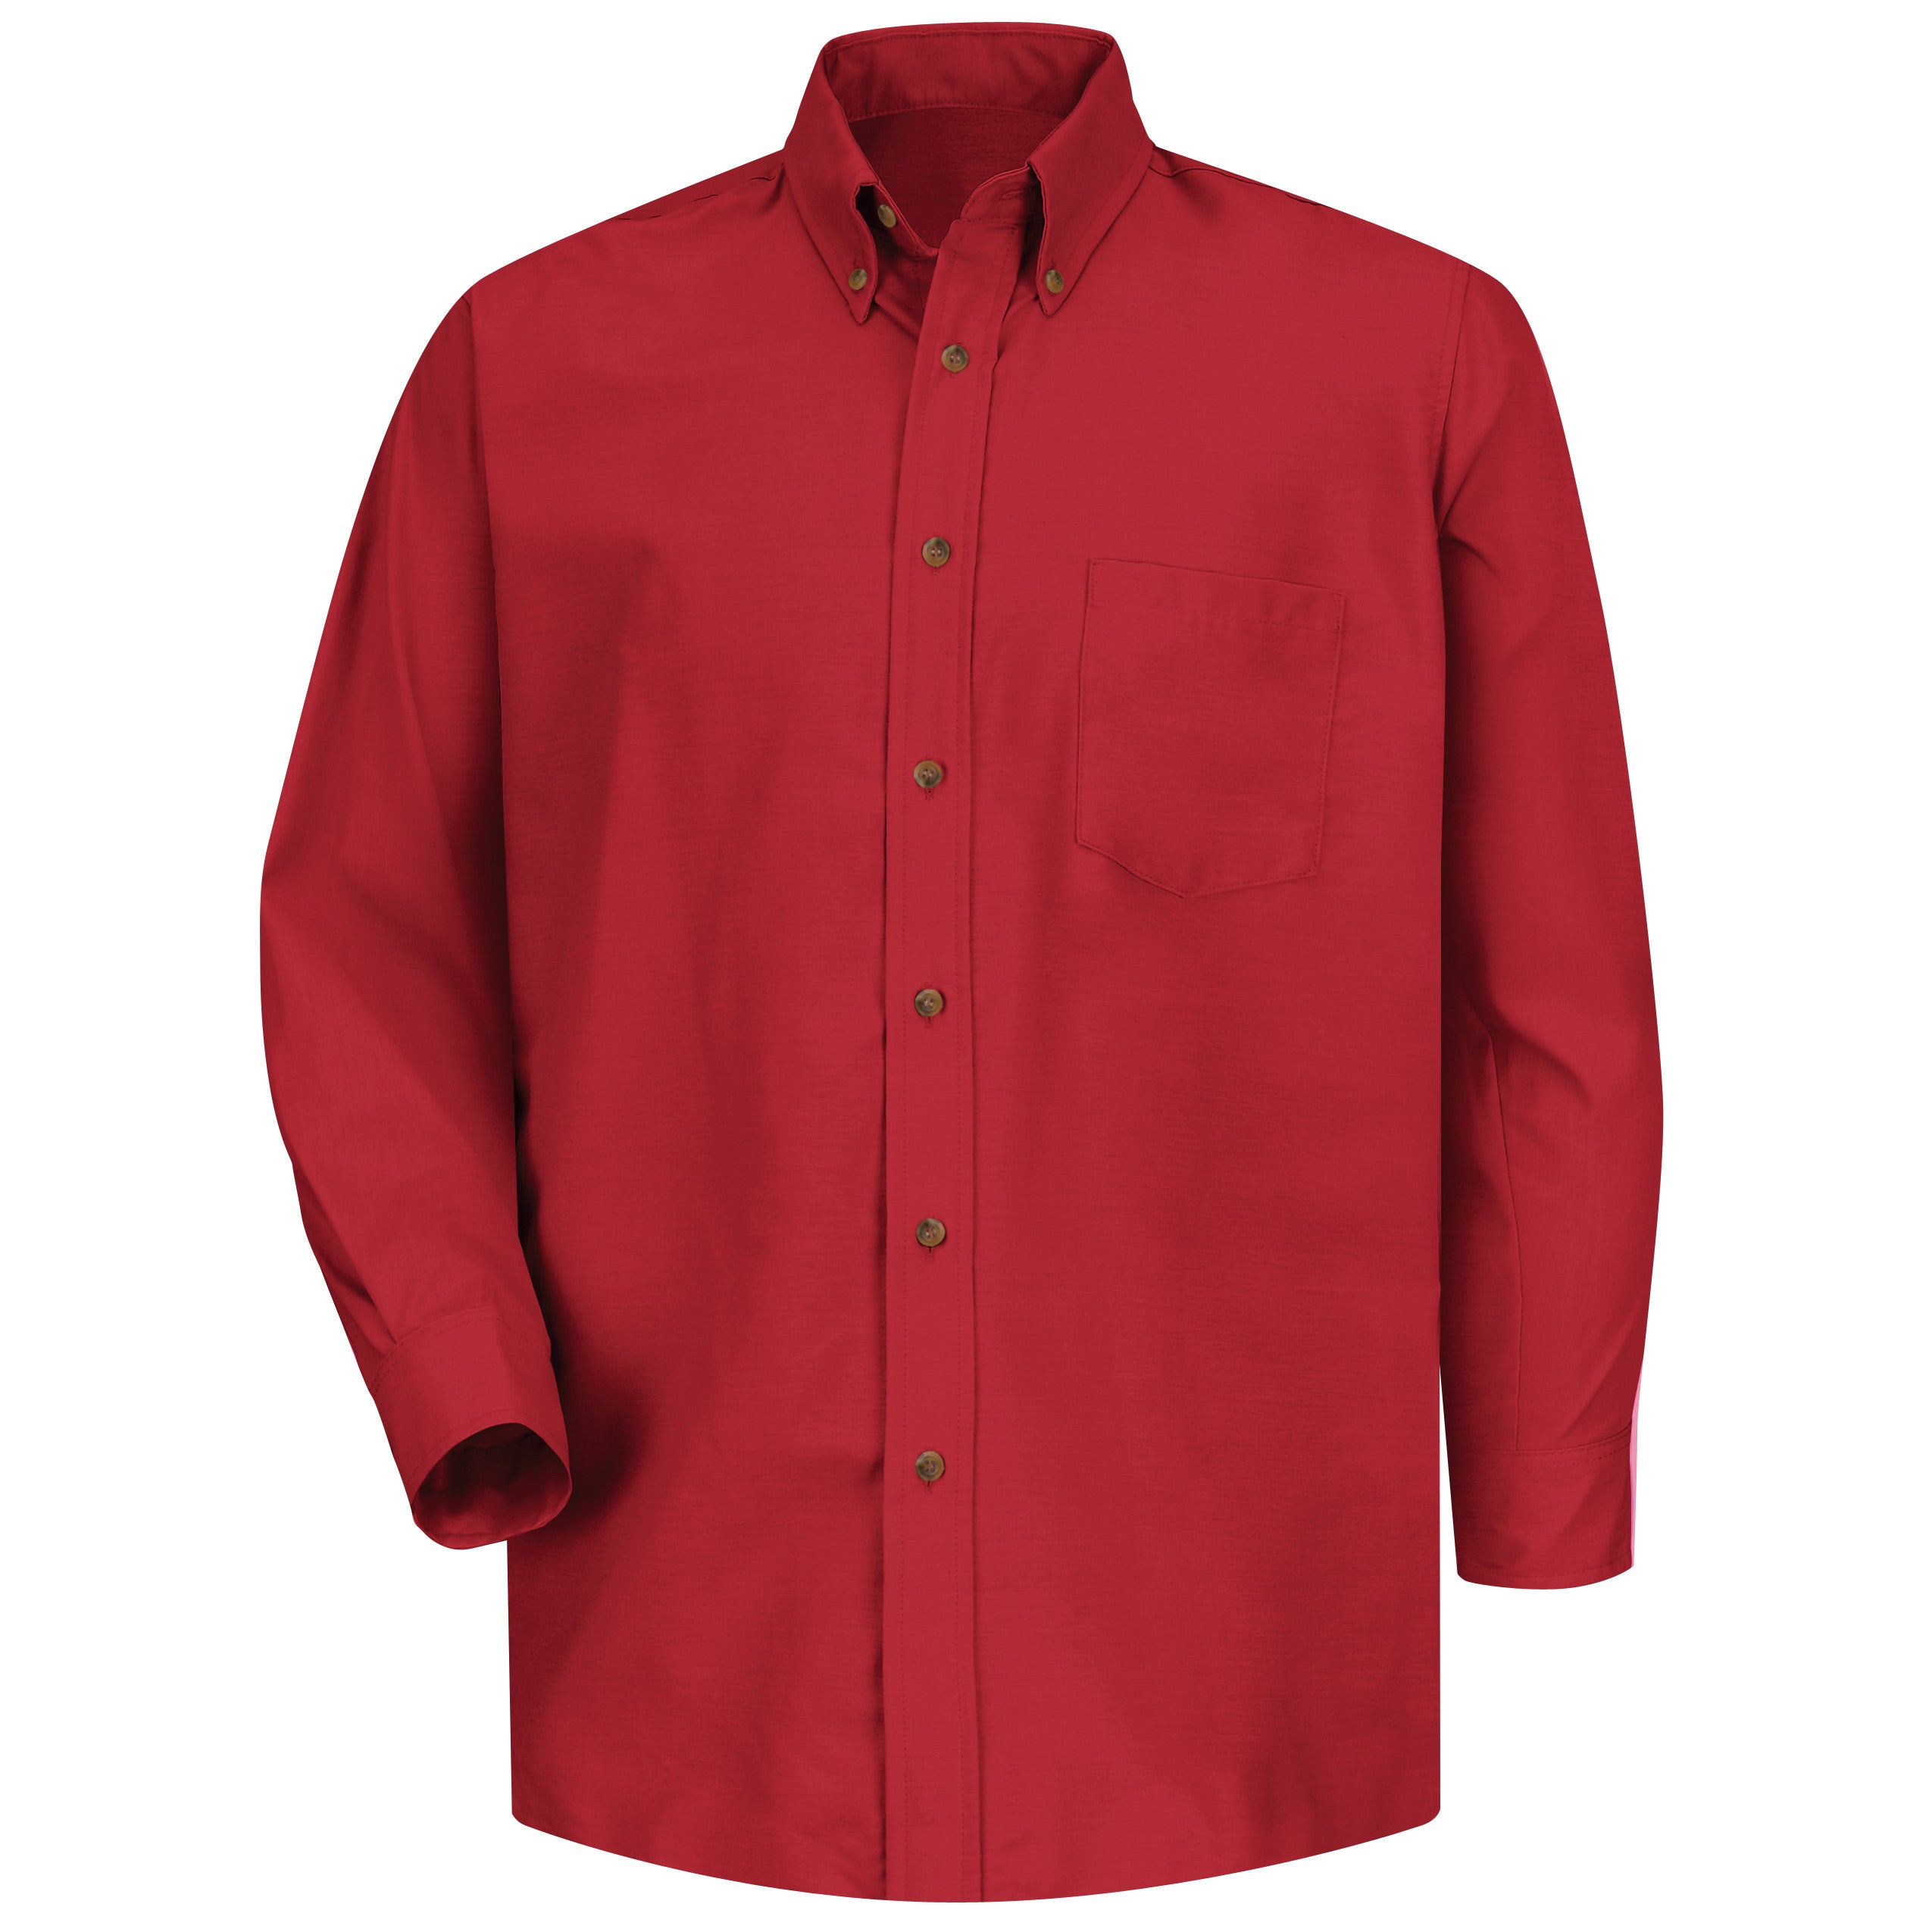 Men's Long Sleeve Poplin Dress Shirt SP90 - Red-eSafety Supplies, Inc